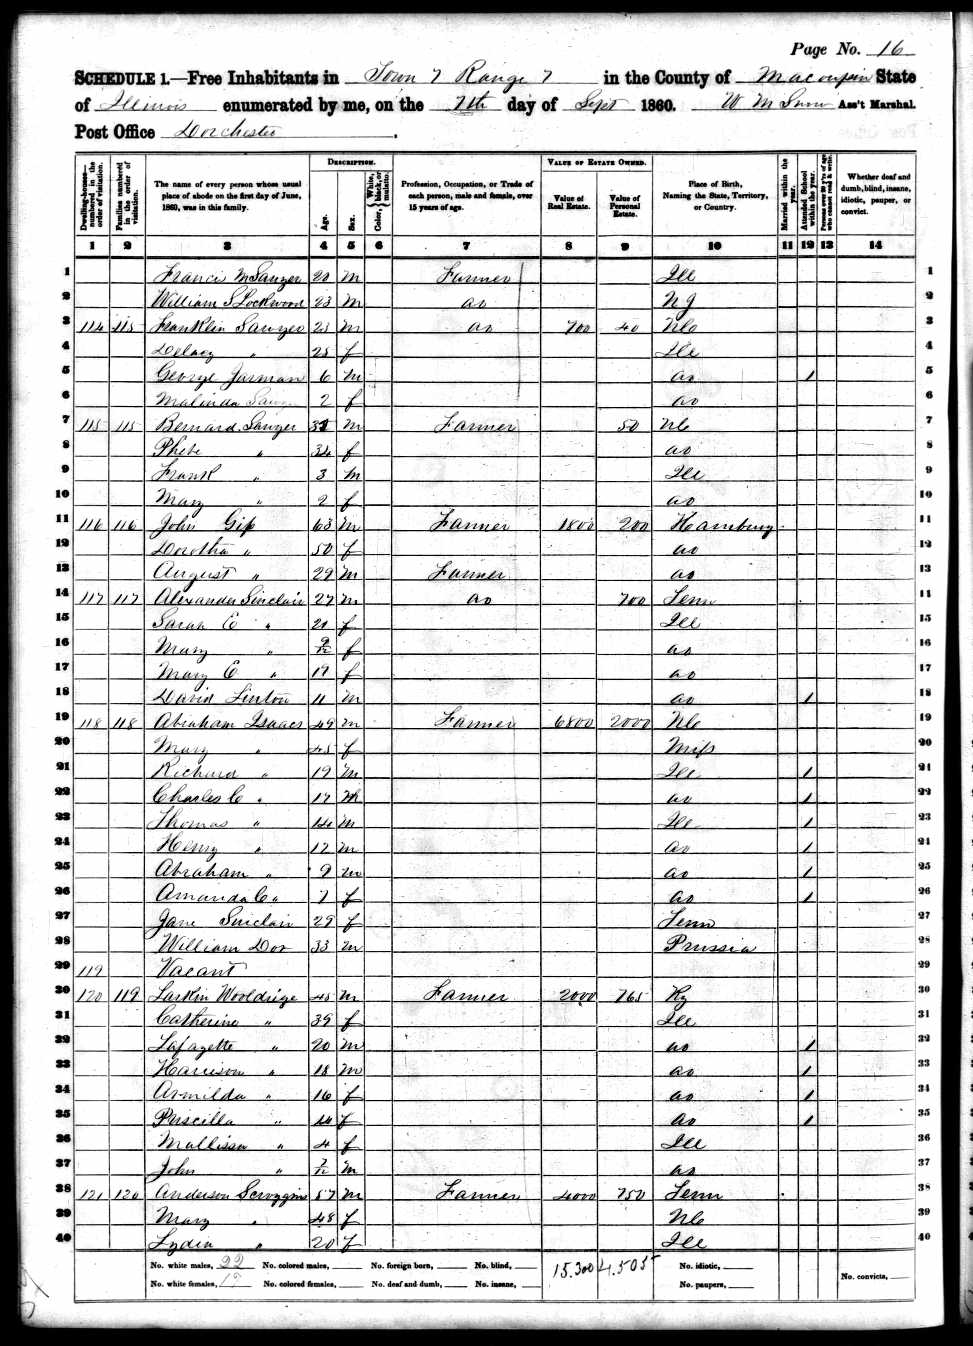 Anderson Scroggins (Sr.), 1860 Macoupin County, Illinois, census